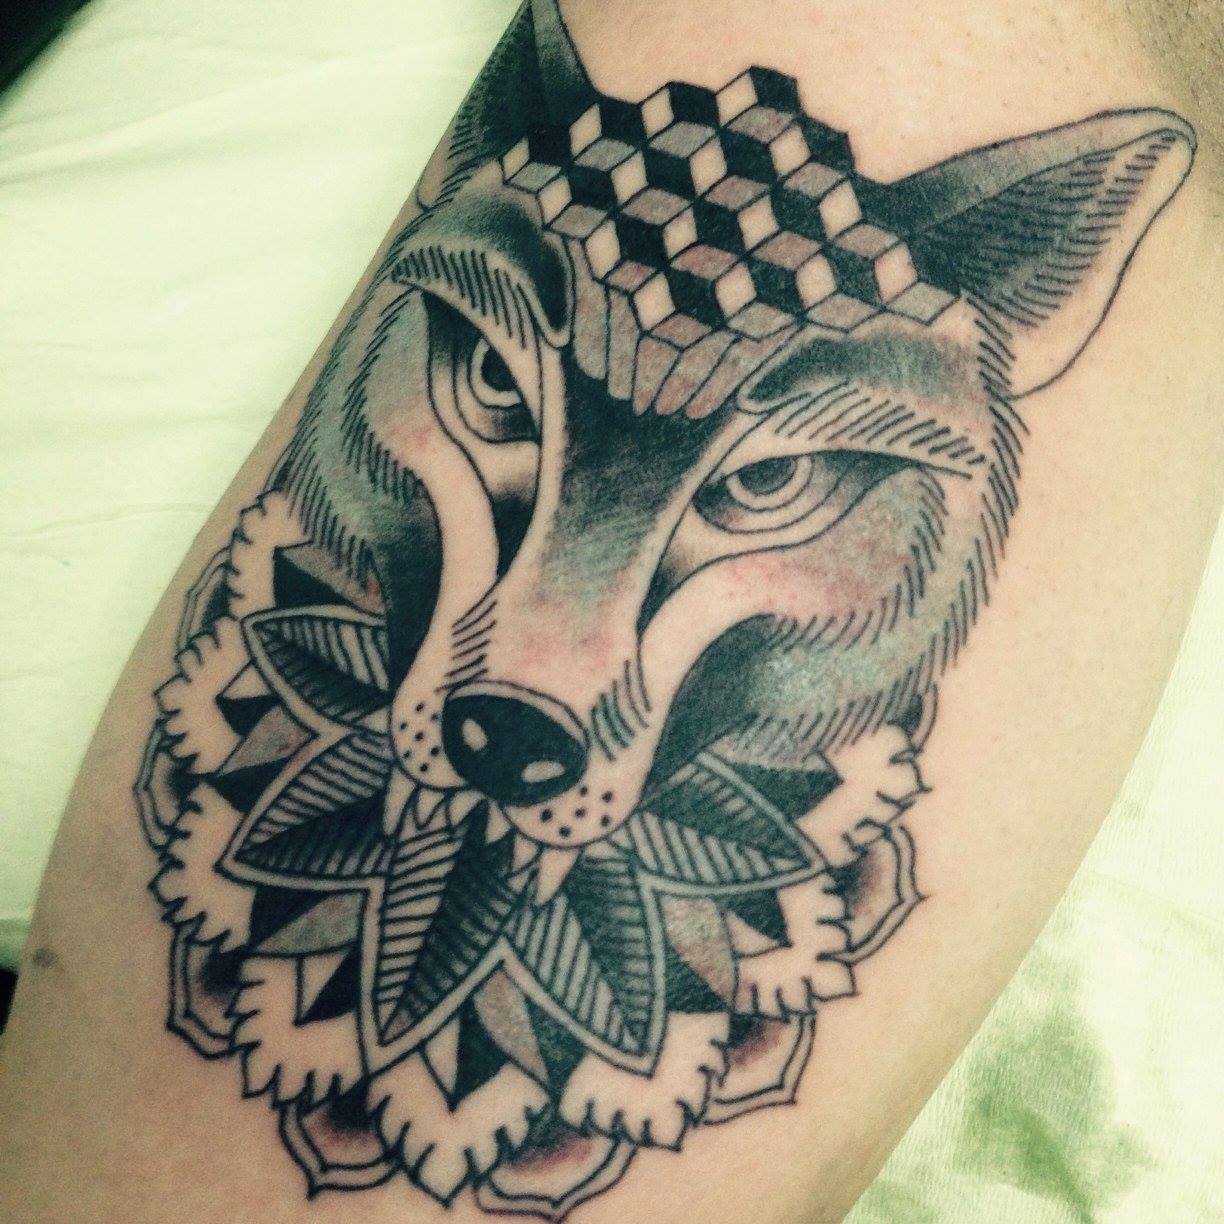 Tatuaje de un lobo con zonas geométricas